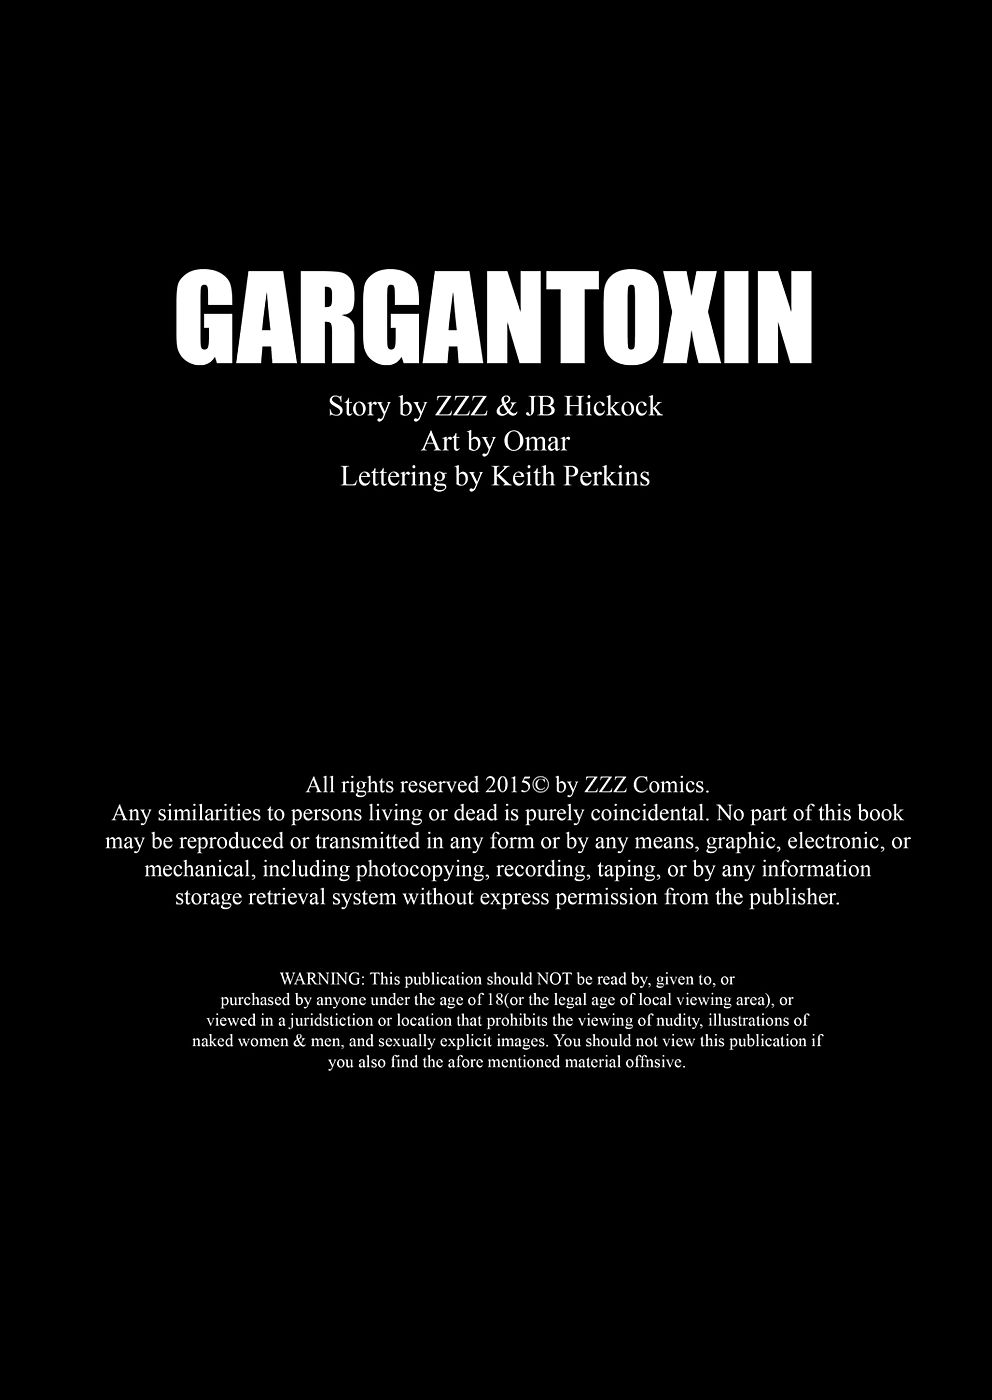 zzz gargantoxin page 1